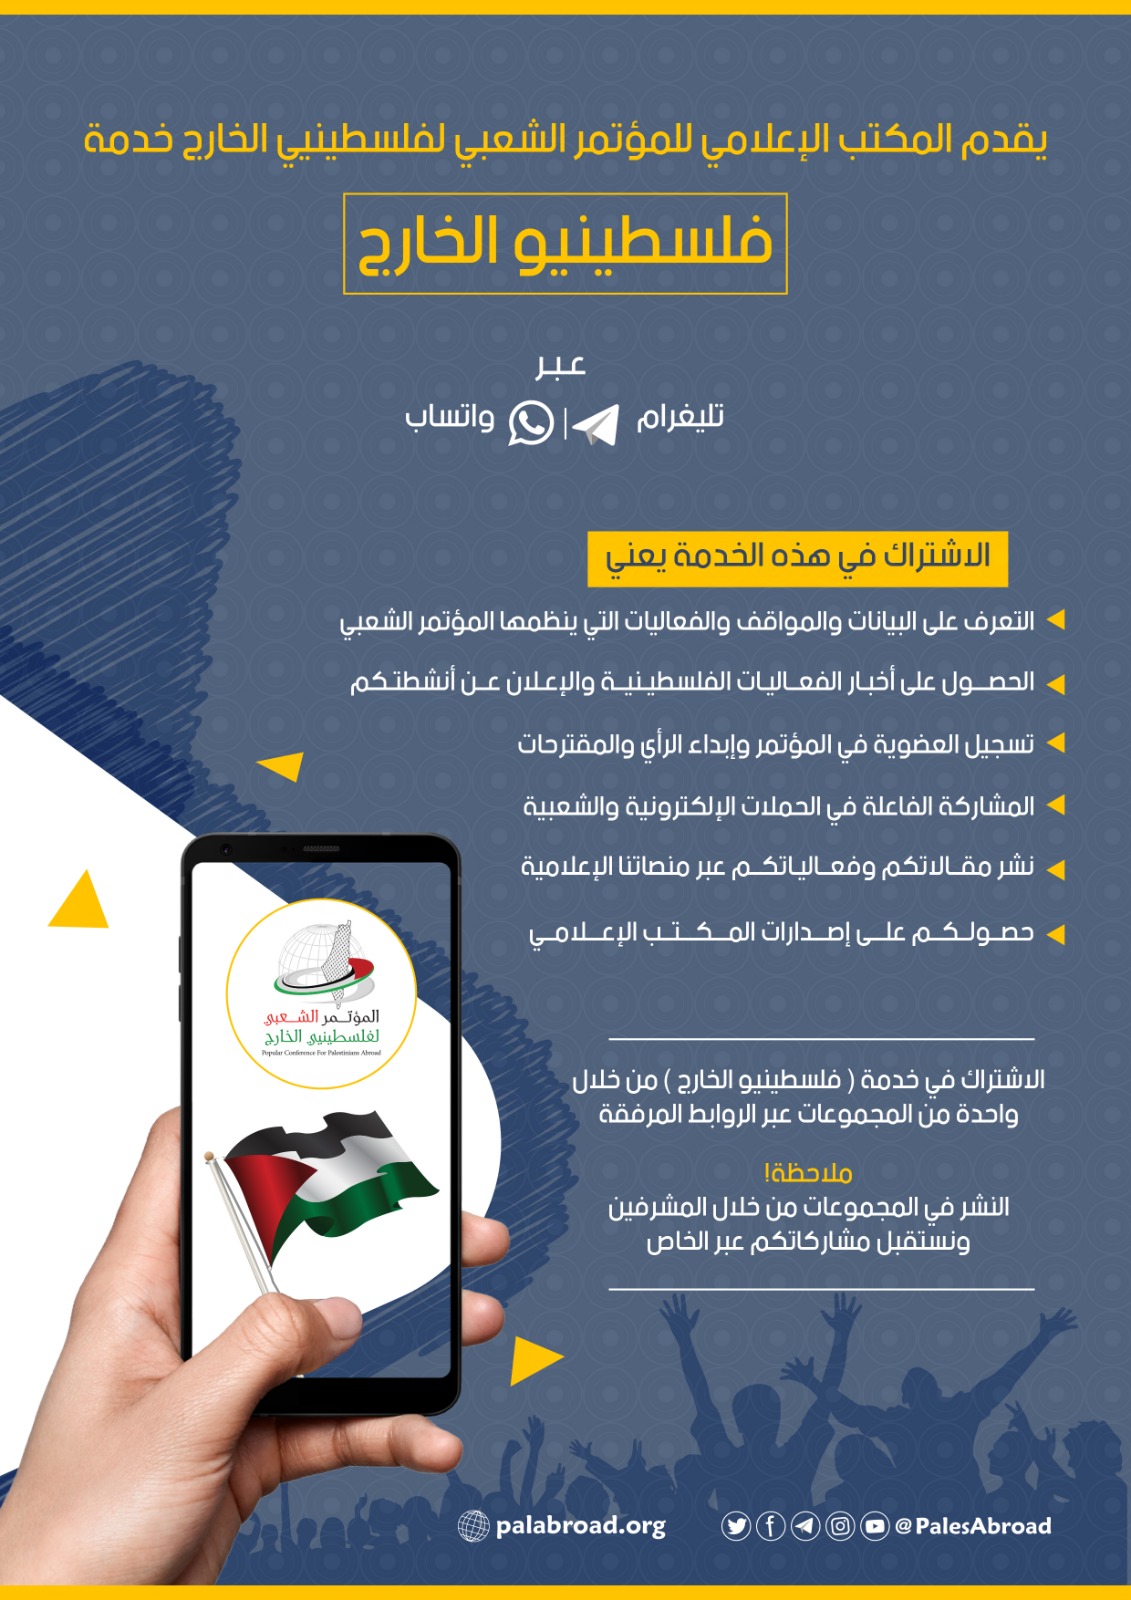 فلسطينيو الخارج - منصة تفاعلية عبر واتساب وتليغرام